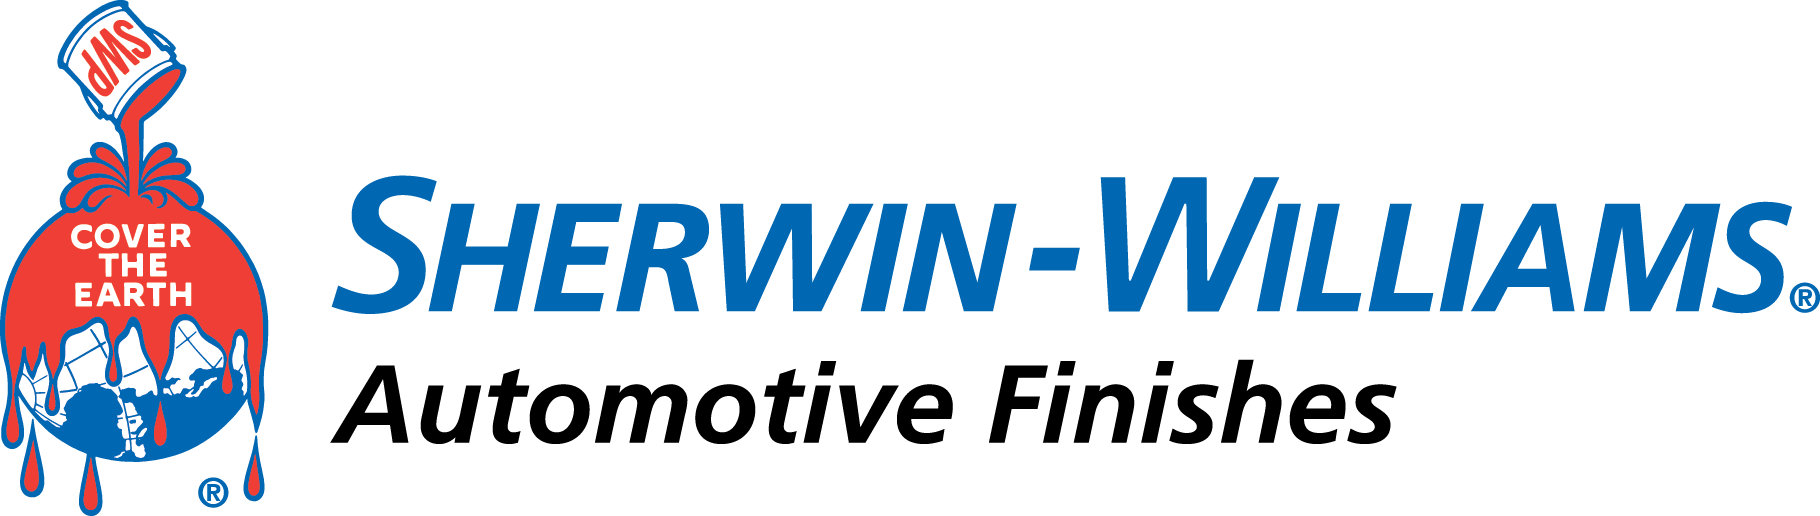 866-8667427_sherwin-williams-automotive-finishes-logo